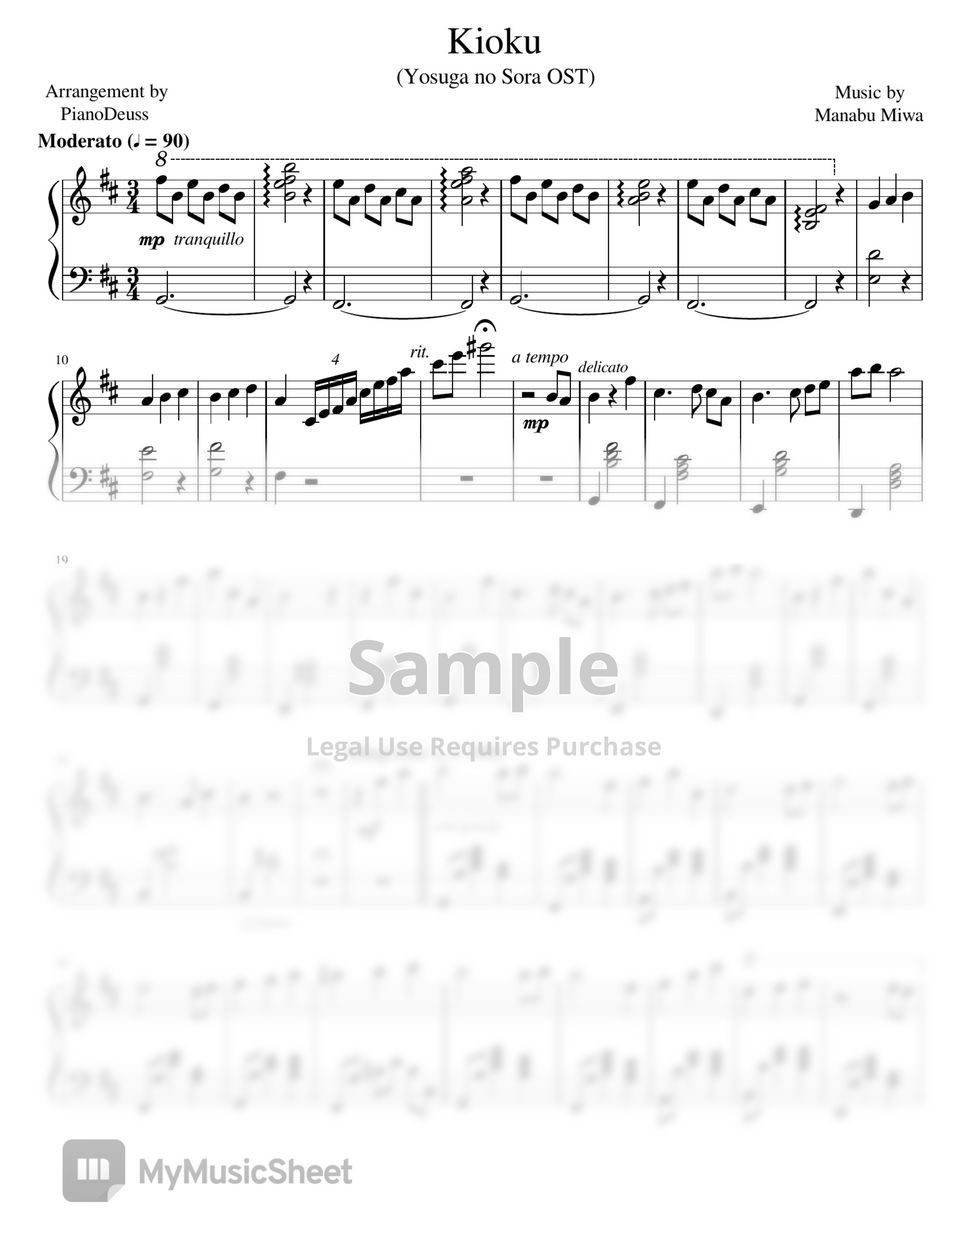 Play Kioku (Yosuga no Sora) Music Sheet